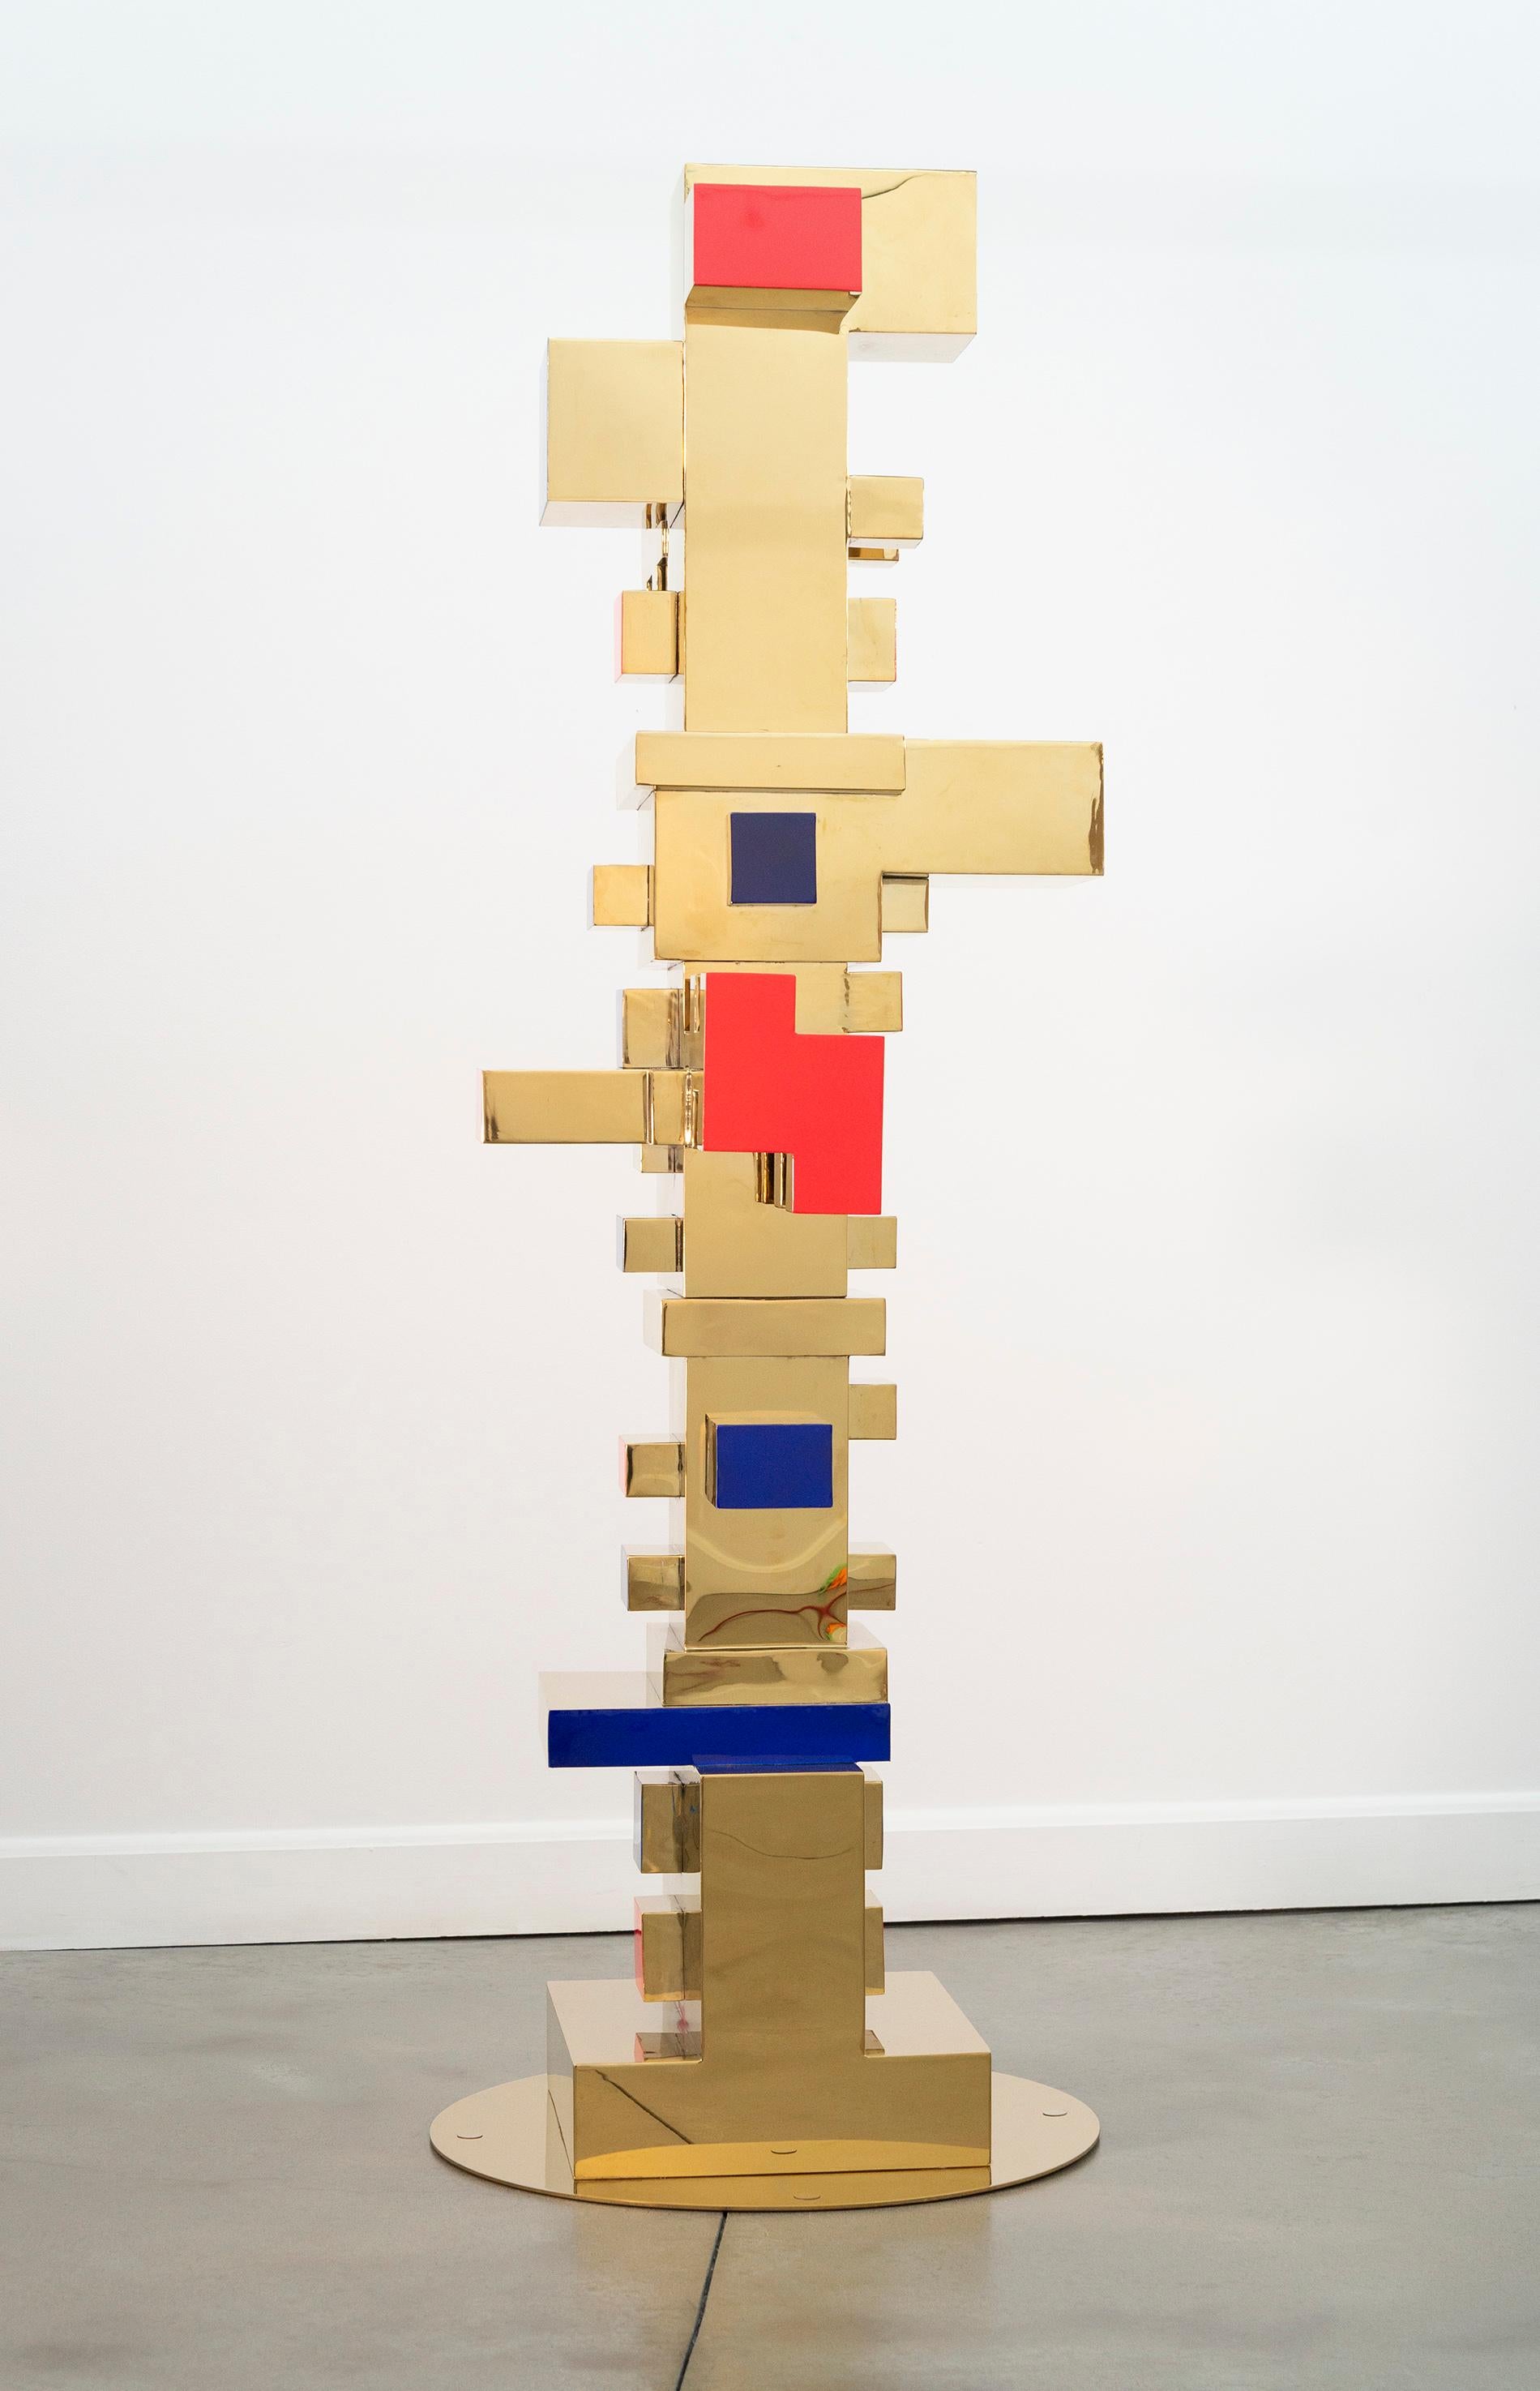 Blocs empilés - or, rouge, bleu - totem, sculpture en acier inoxydable plaqué or - Contemporain Sculpture par Viktor Mitic